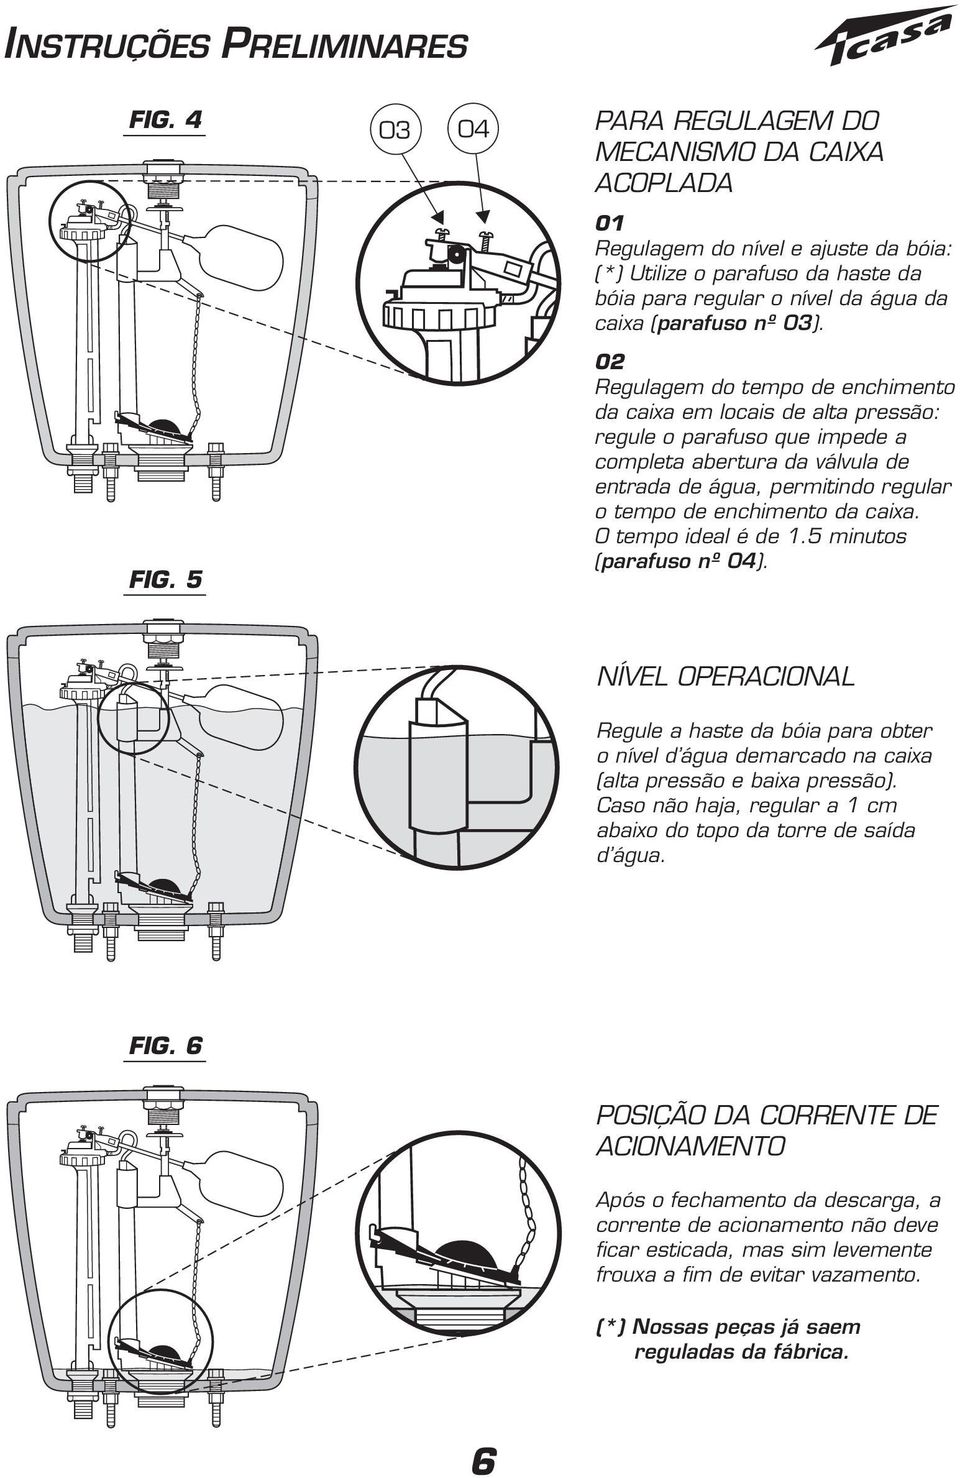 02 Regulagem do tempo de enchimento da caixa em locais de alta pressão: regule o parafuso que impede a completa abertura da válvula de entrada de água, permitindo regular o tempo de enchimento da